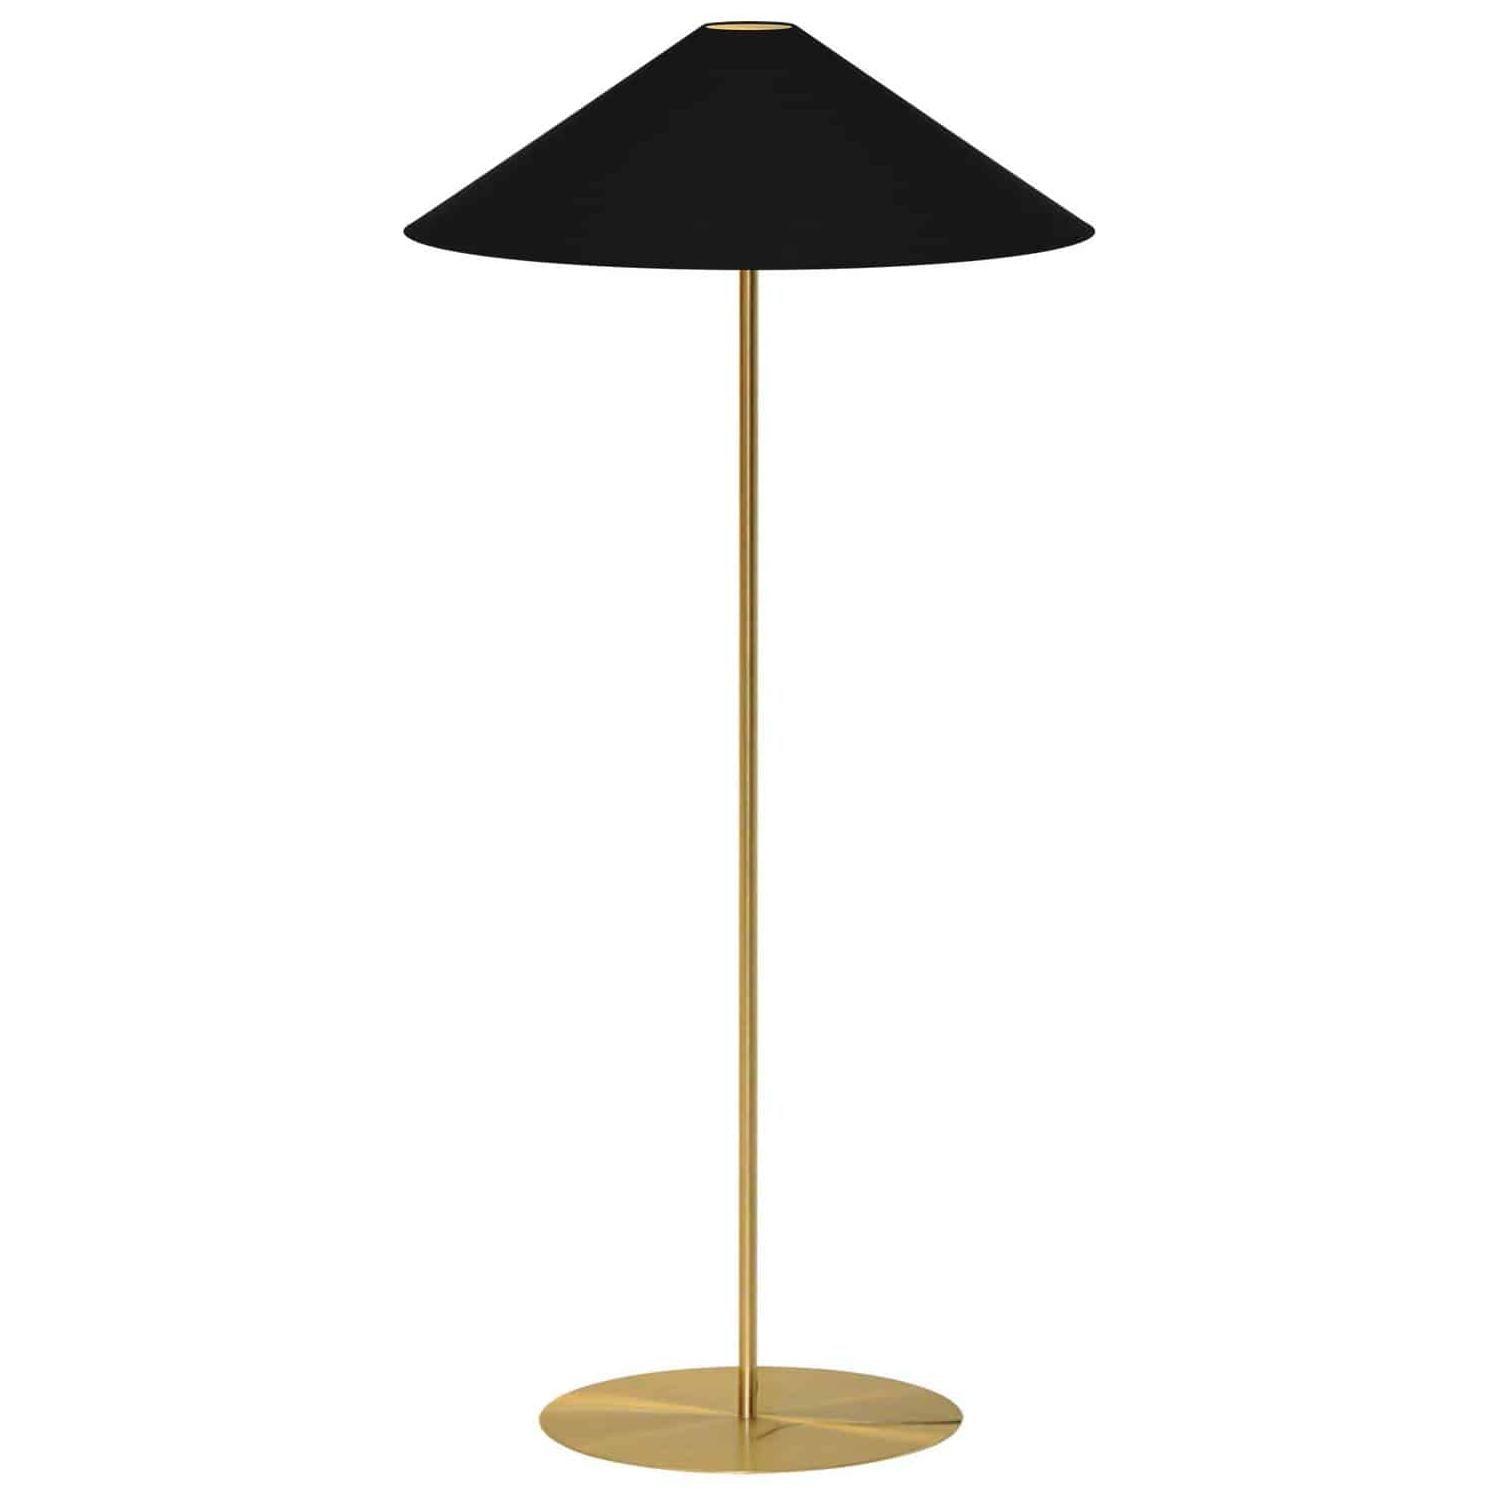 Dainolite - Floor Lamp (Decorative) - Lights Canada